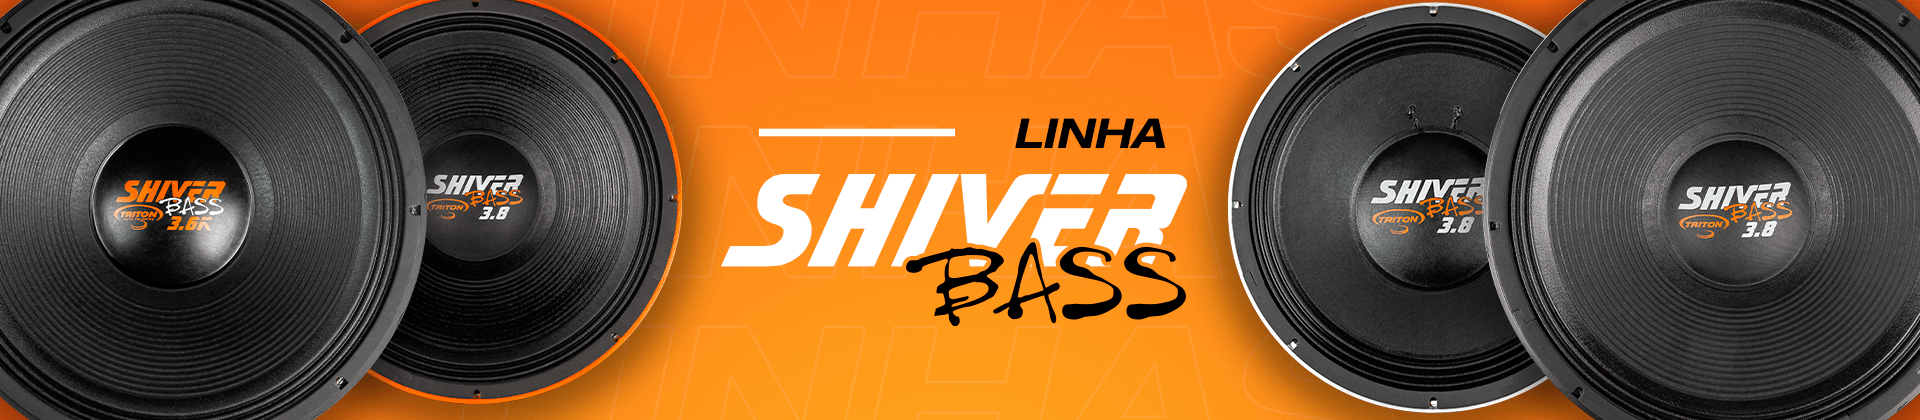 Banner da linha Shiver Bass